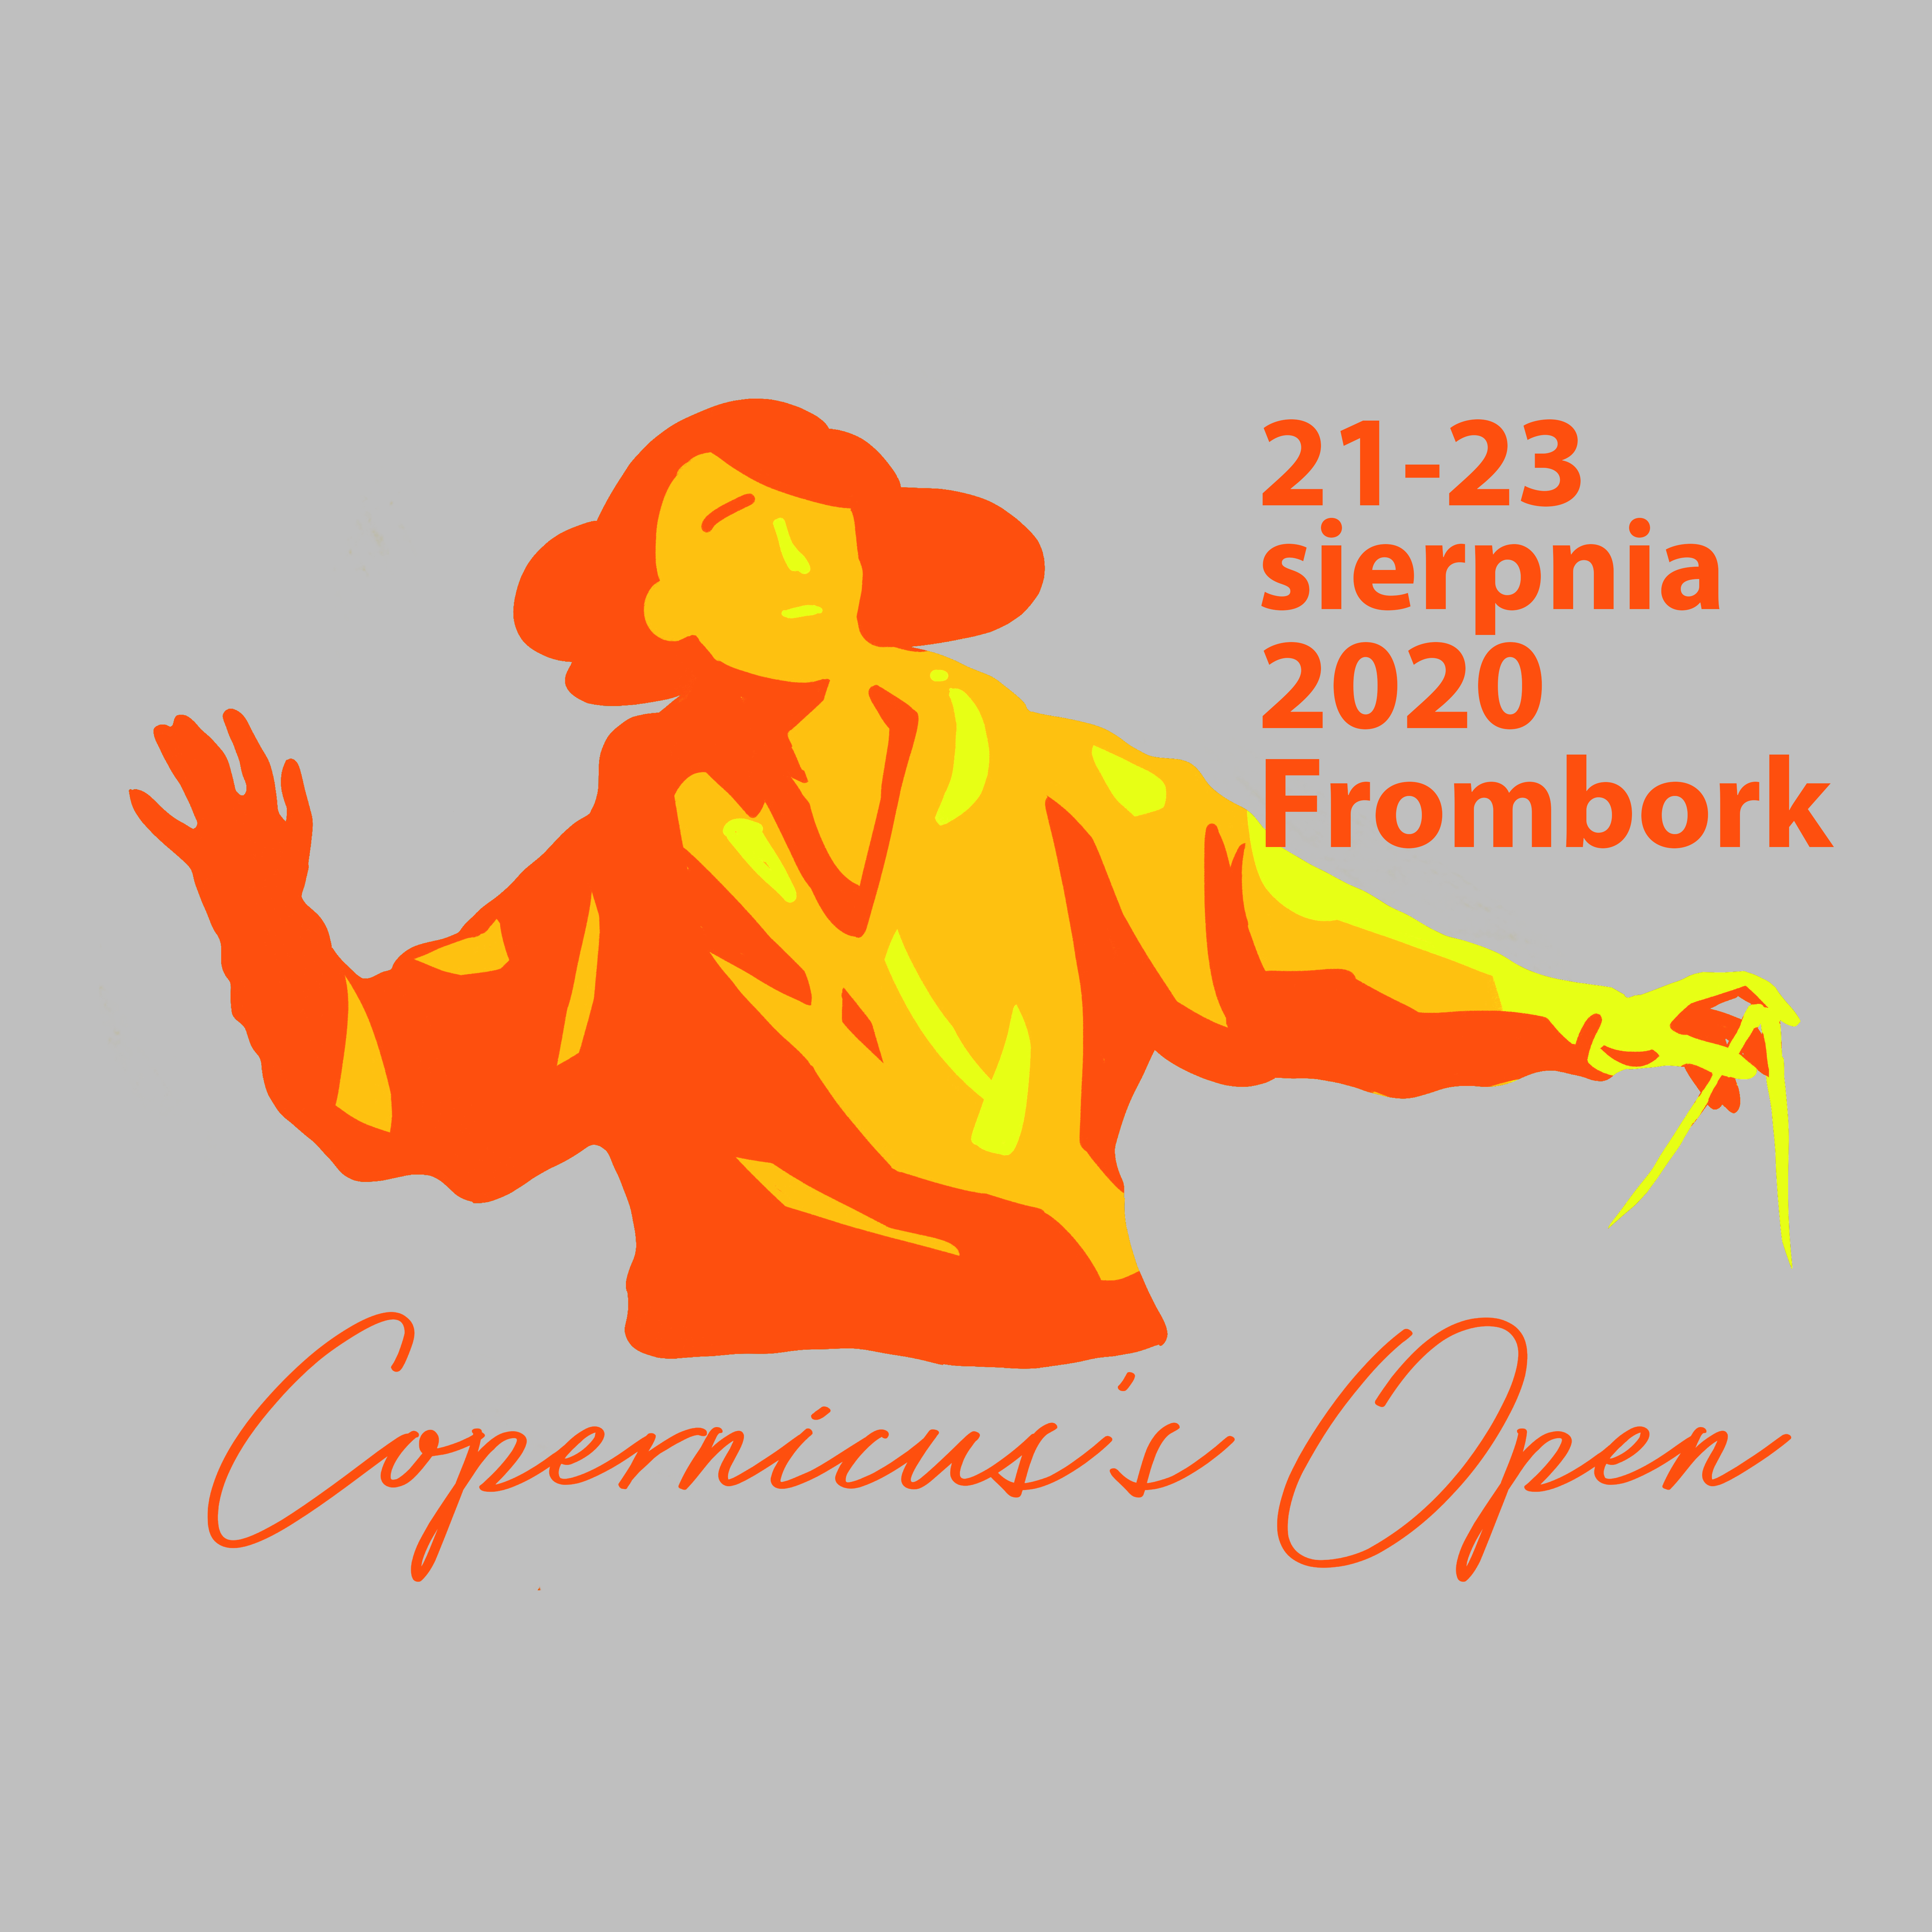 Festiwalu nauki i sztuki Copernicus's Open